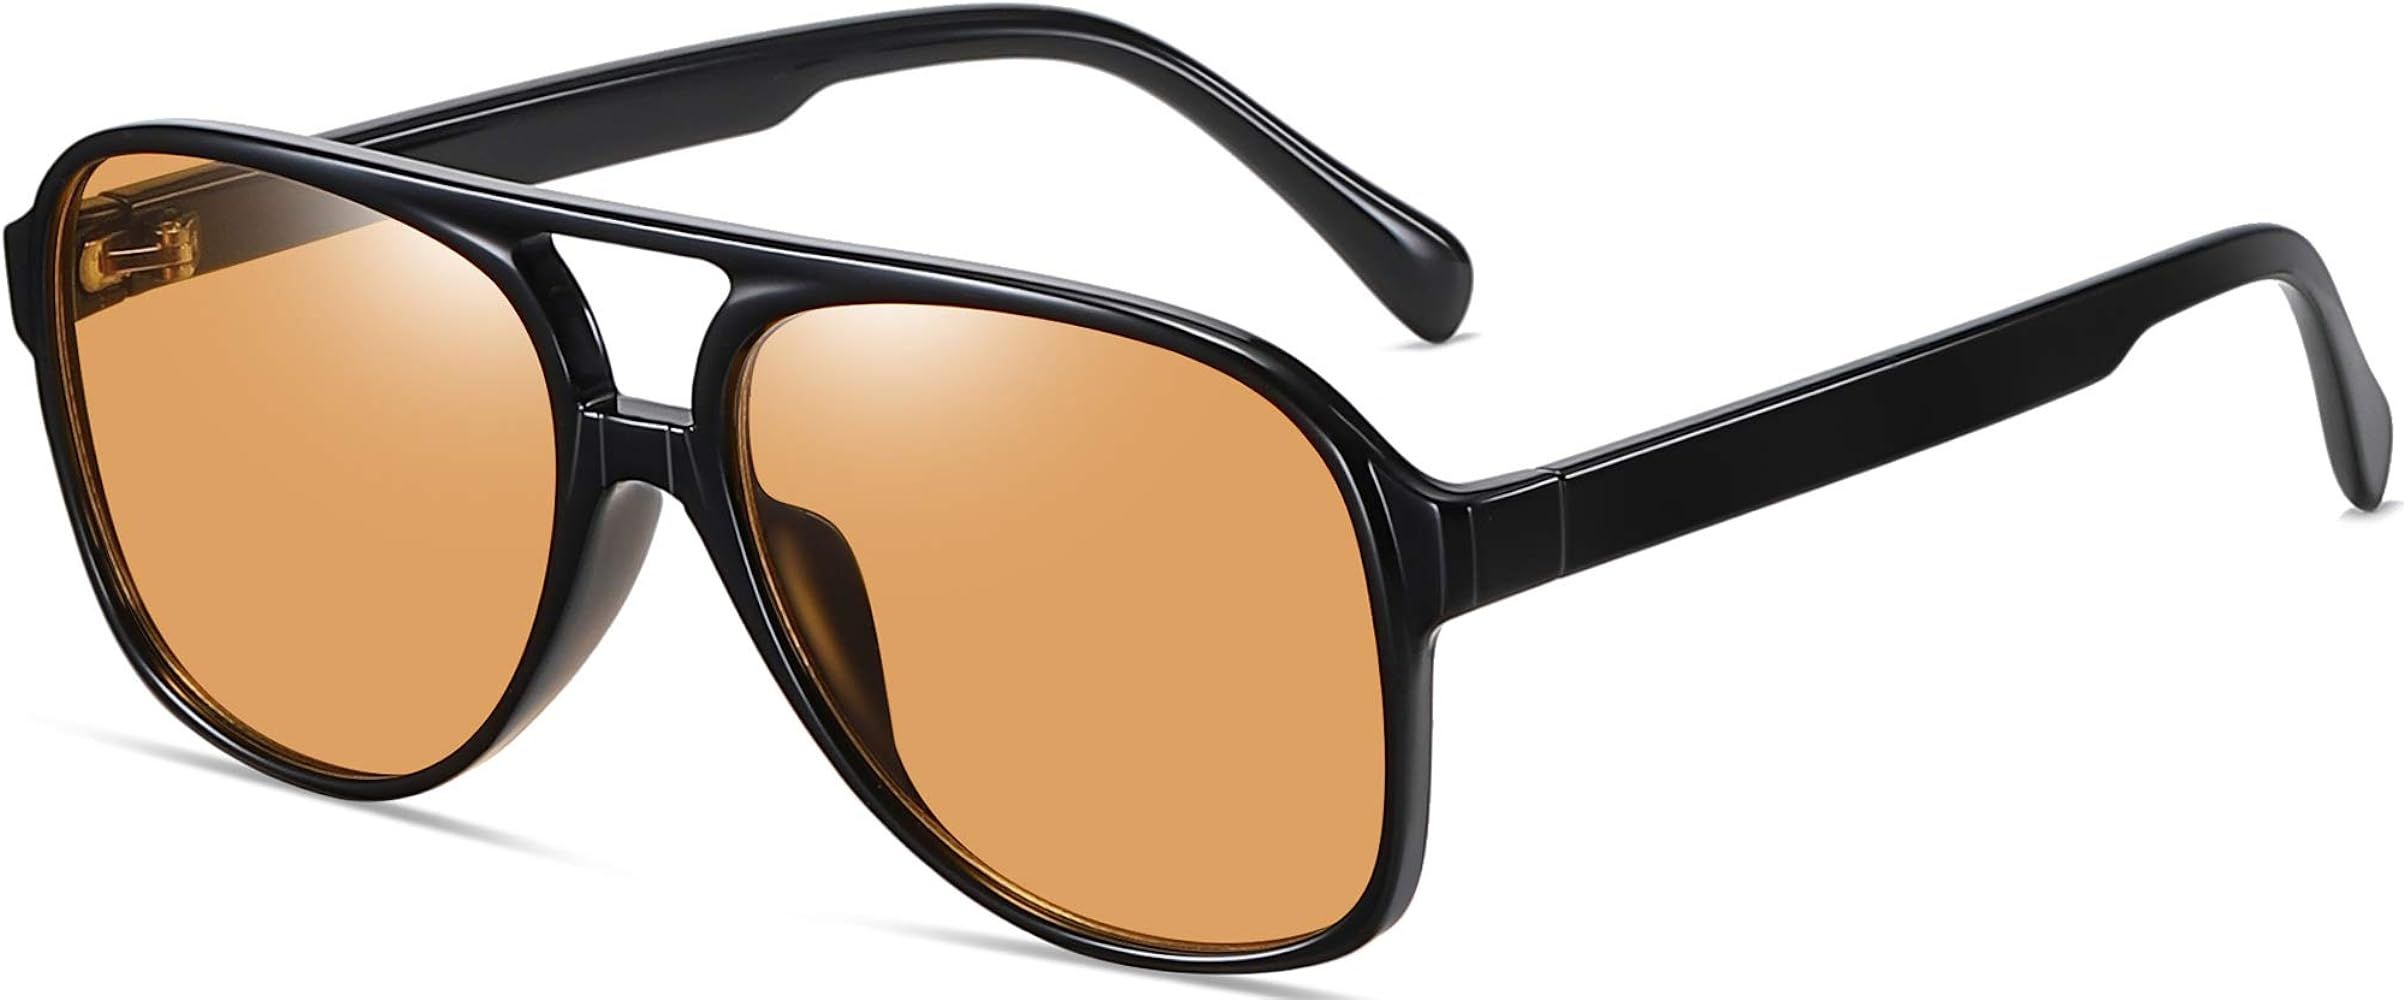 AOMASTE Polarized Aviator Sunglasses for Women Men UV Protection Shades Retro Style Large Frame | Amazon (US)